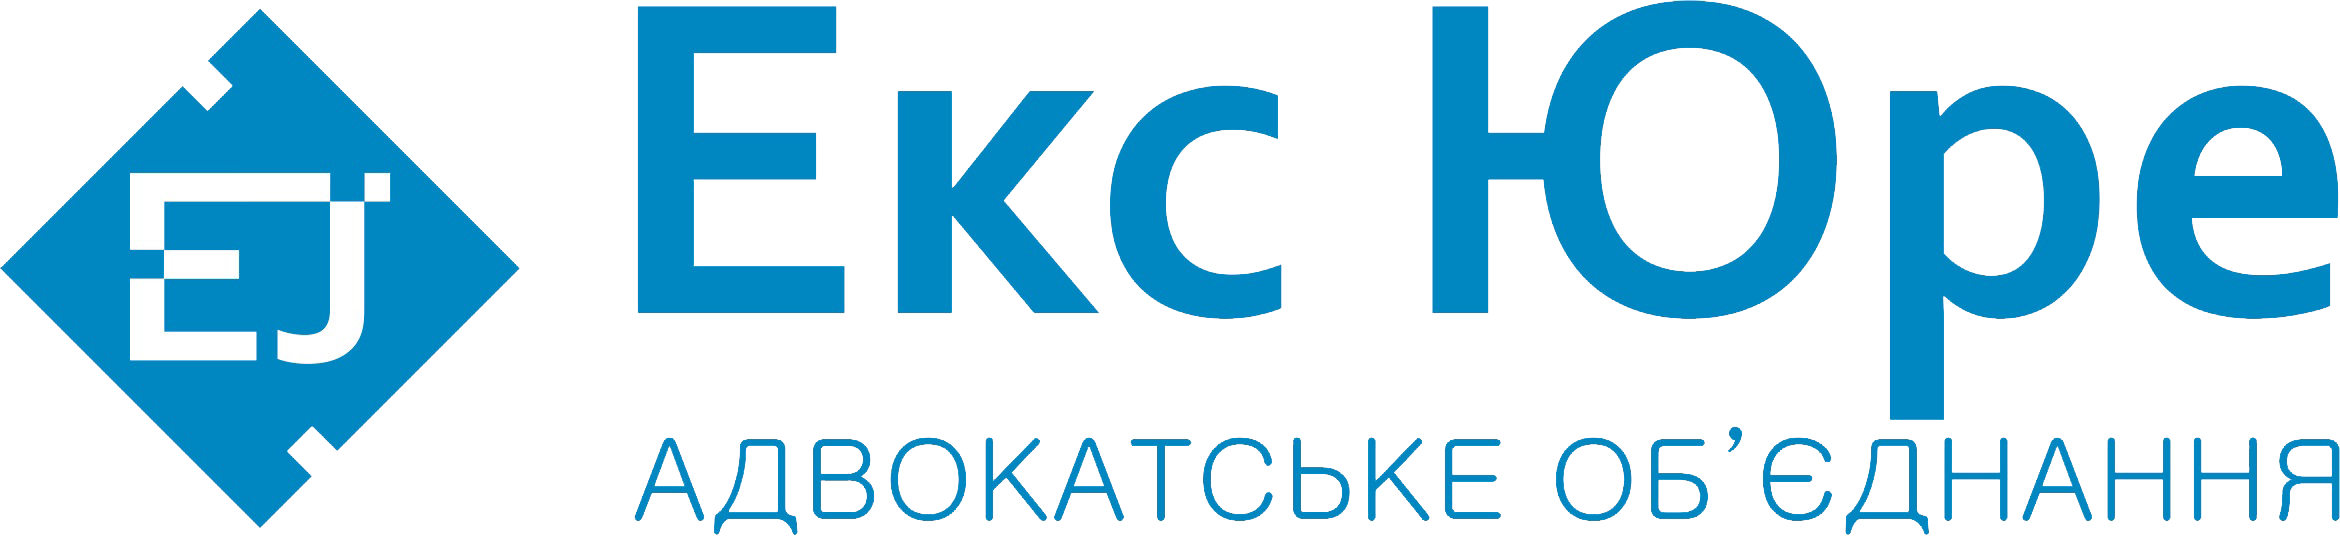 image_logo